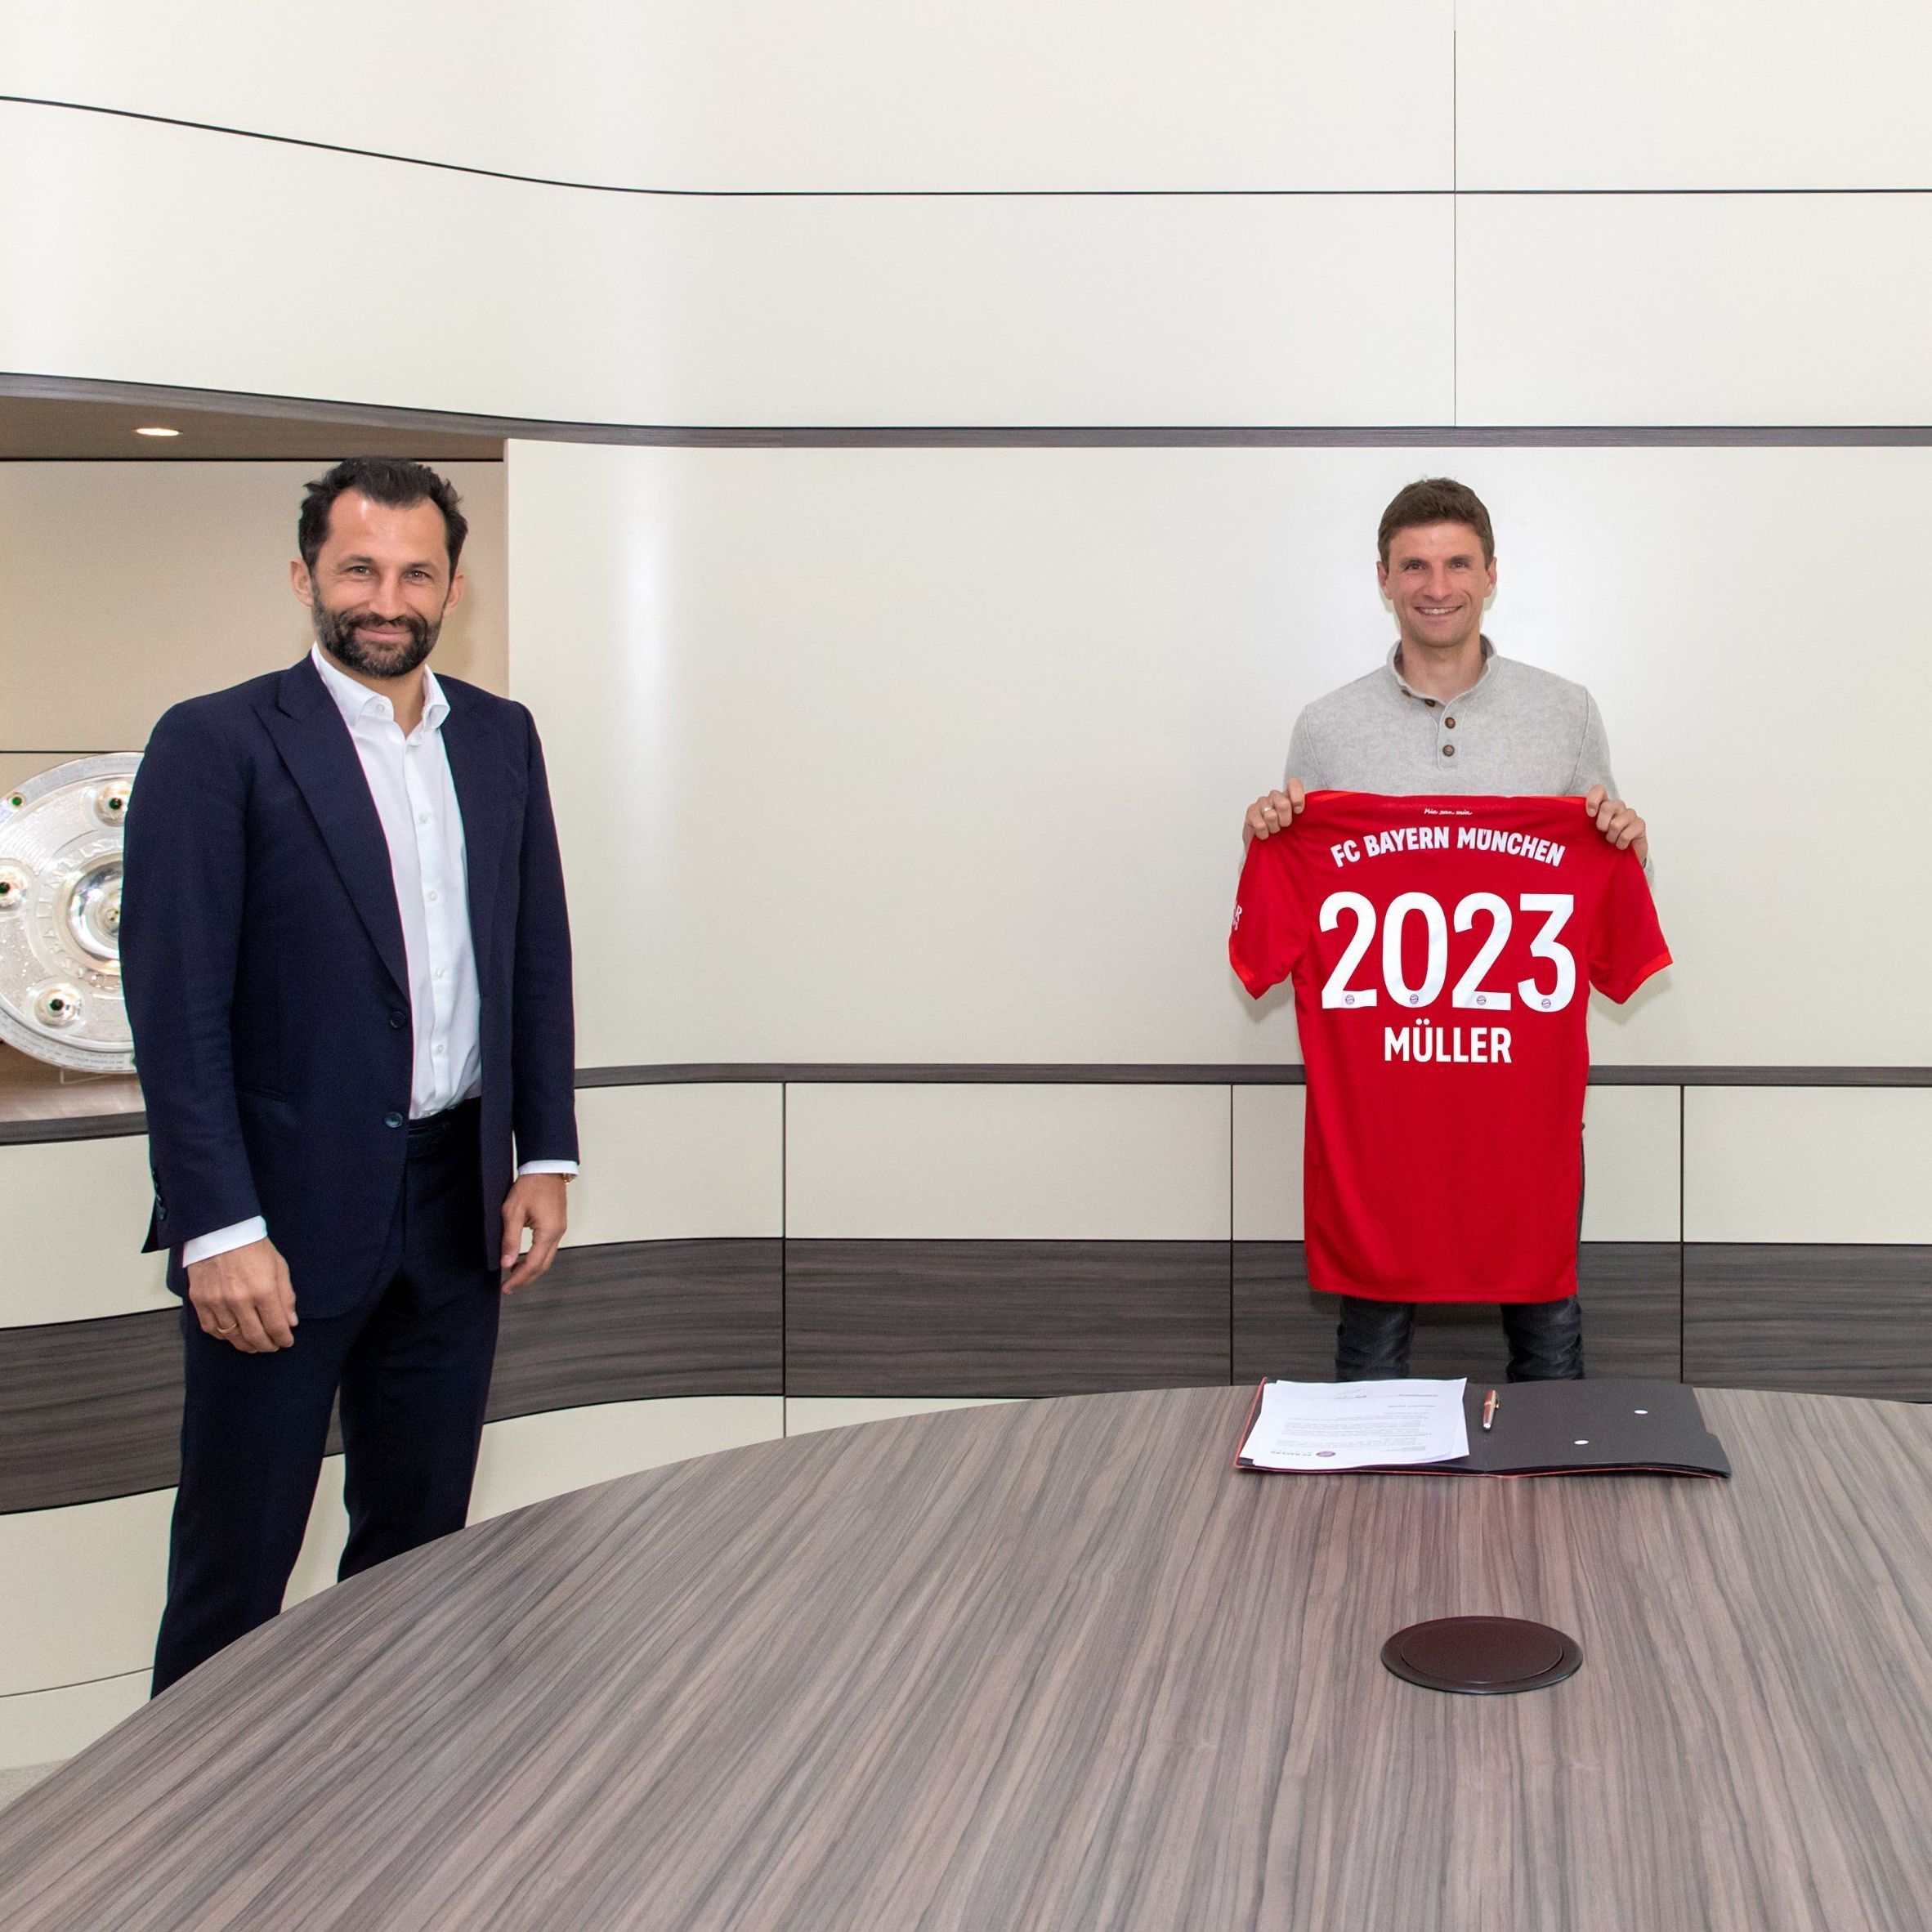 Нападник "Баварії" підписав новий контракт за правилами соціальної дистанції та отримав респект від фанатів